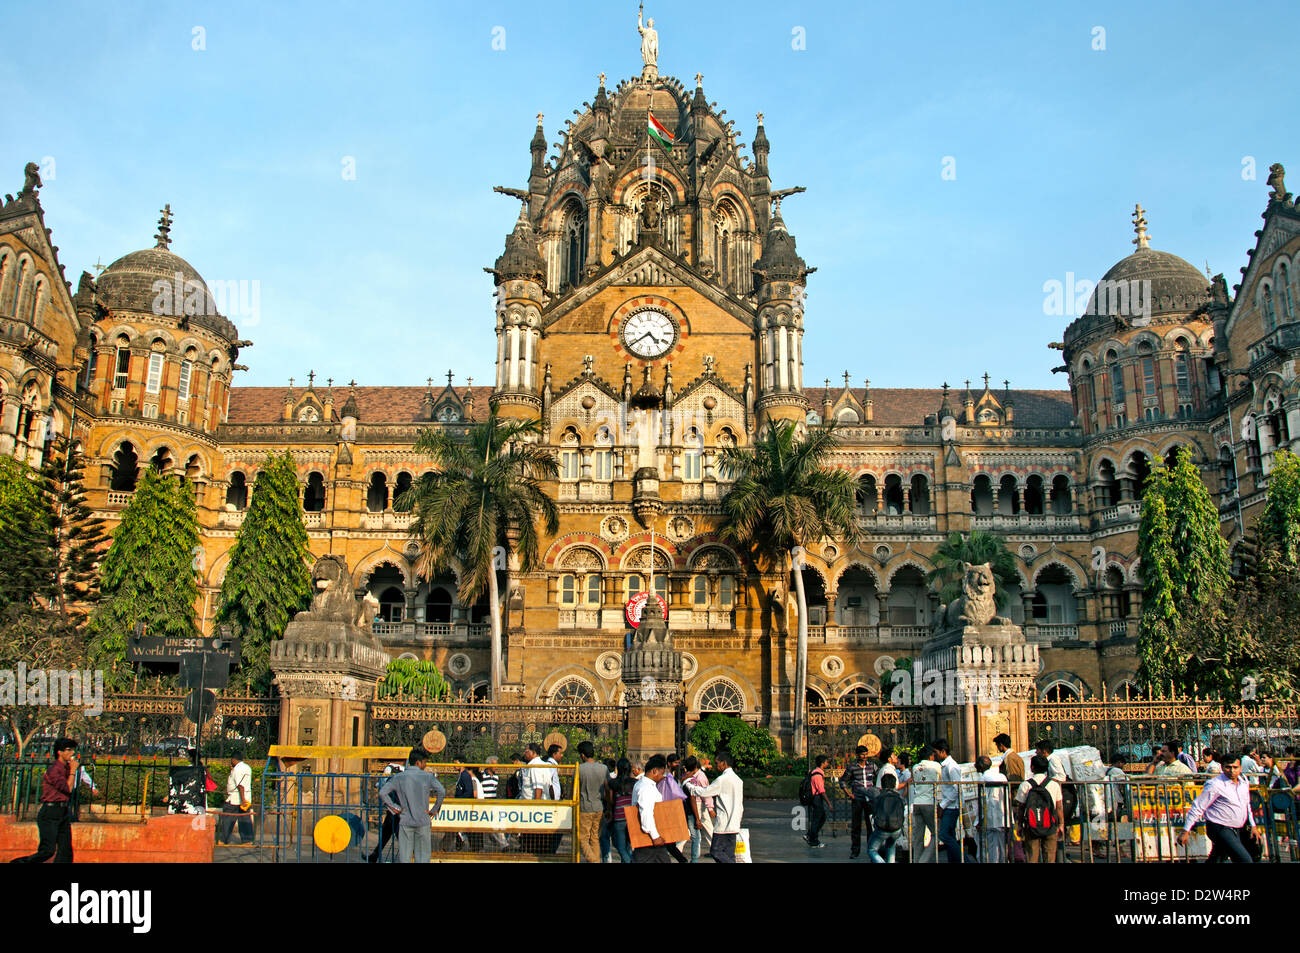 La gare Chhatrapati Shivaji terminus Gare Victoria ( ) Mumbai ( Bombay ) de l'architecture néo-gothique victorienne Inde Banque D'Images